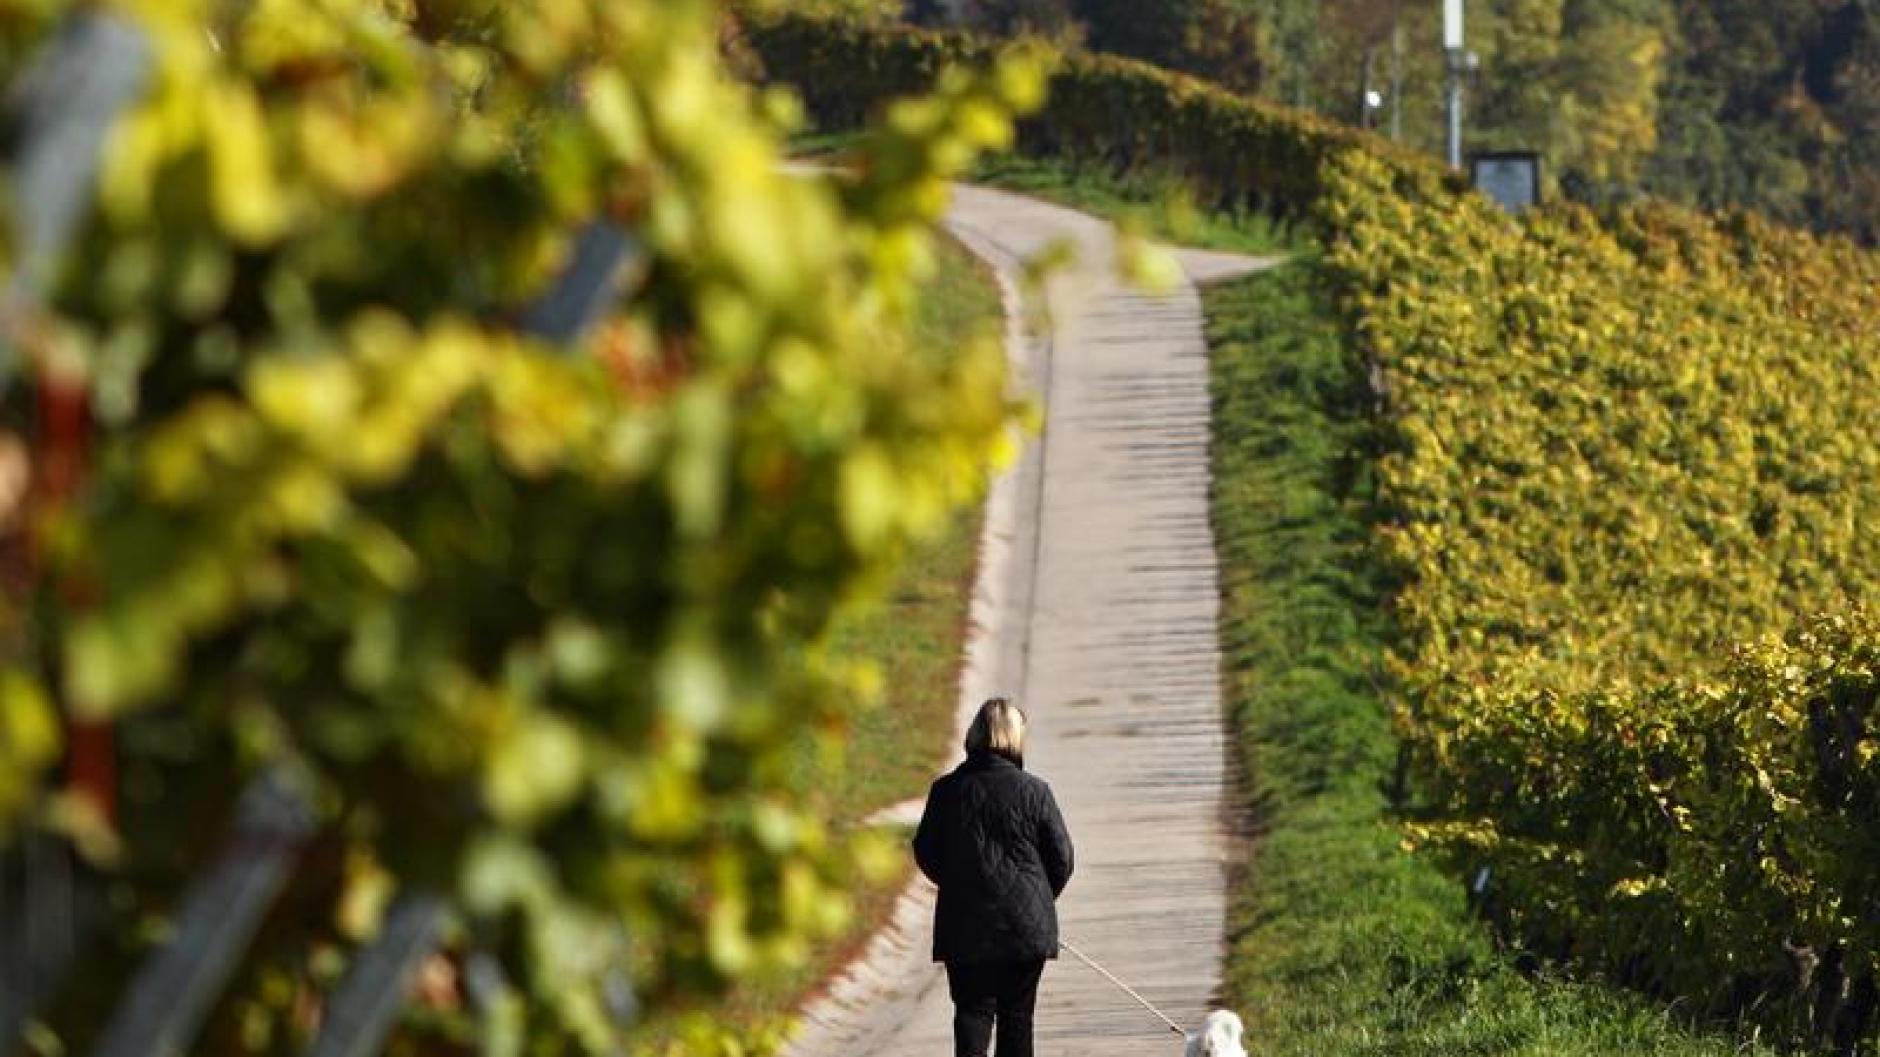 Tiere Vergiftungsgefahr Weintrauben für Hunde tabu Augsburger